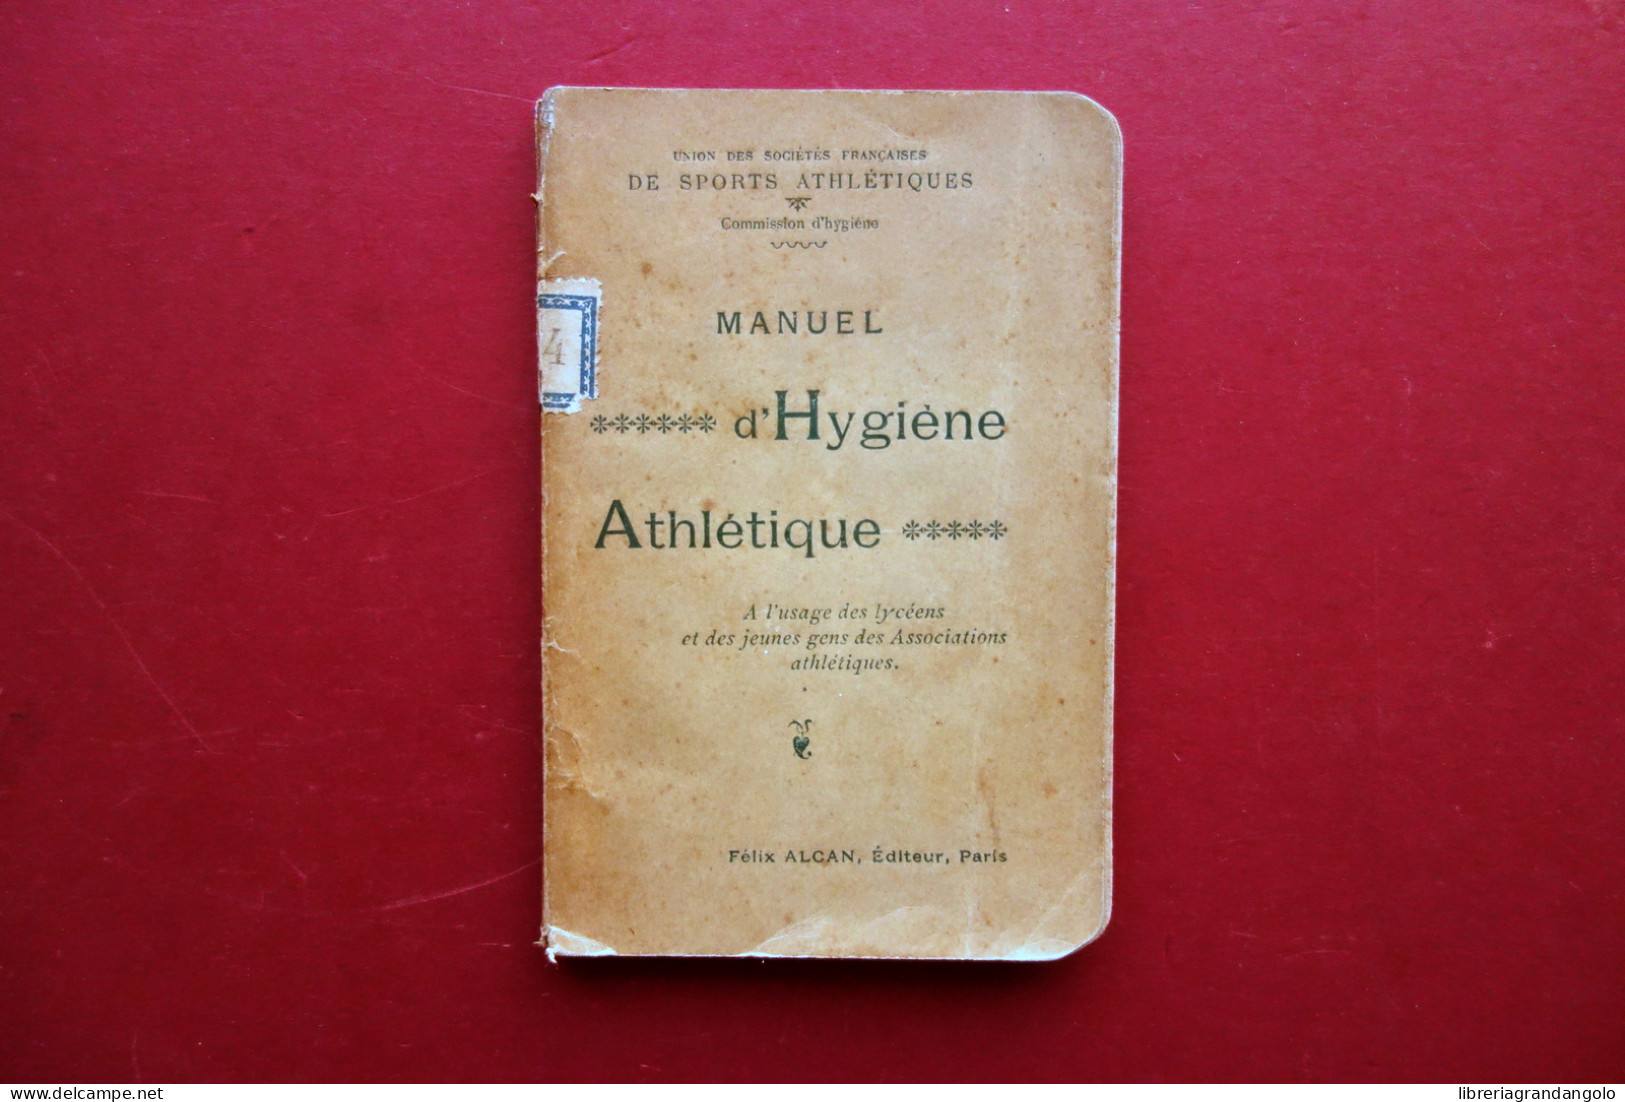 Manuel D'Hygiene Athletique A L'Usage Des Lyceens Alcan Paris 1895 Sport - Non Classificati